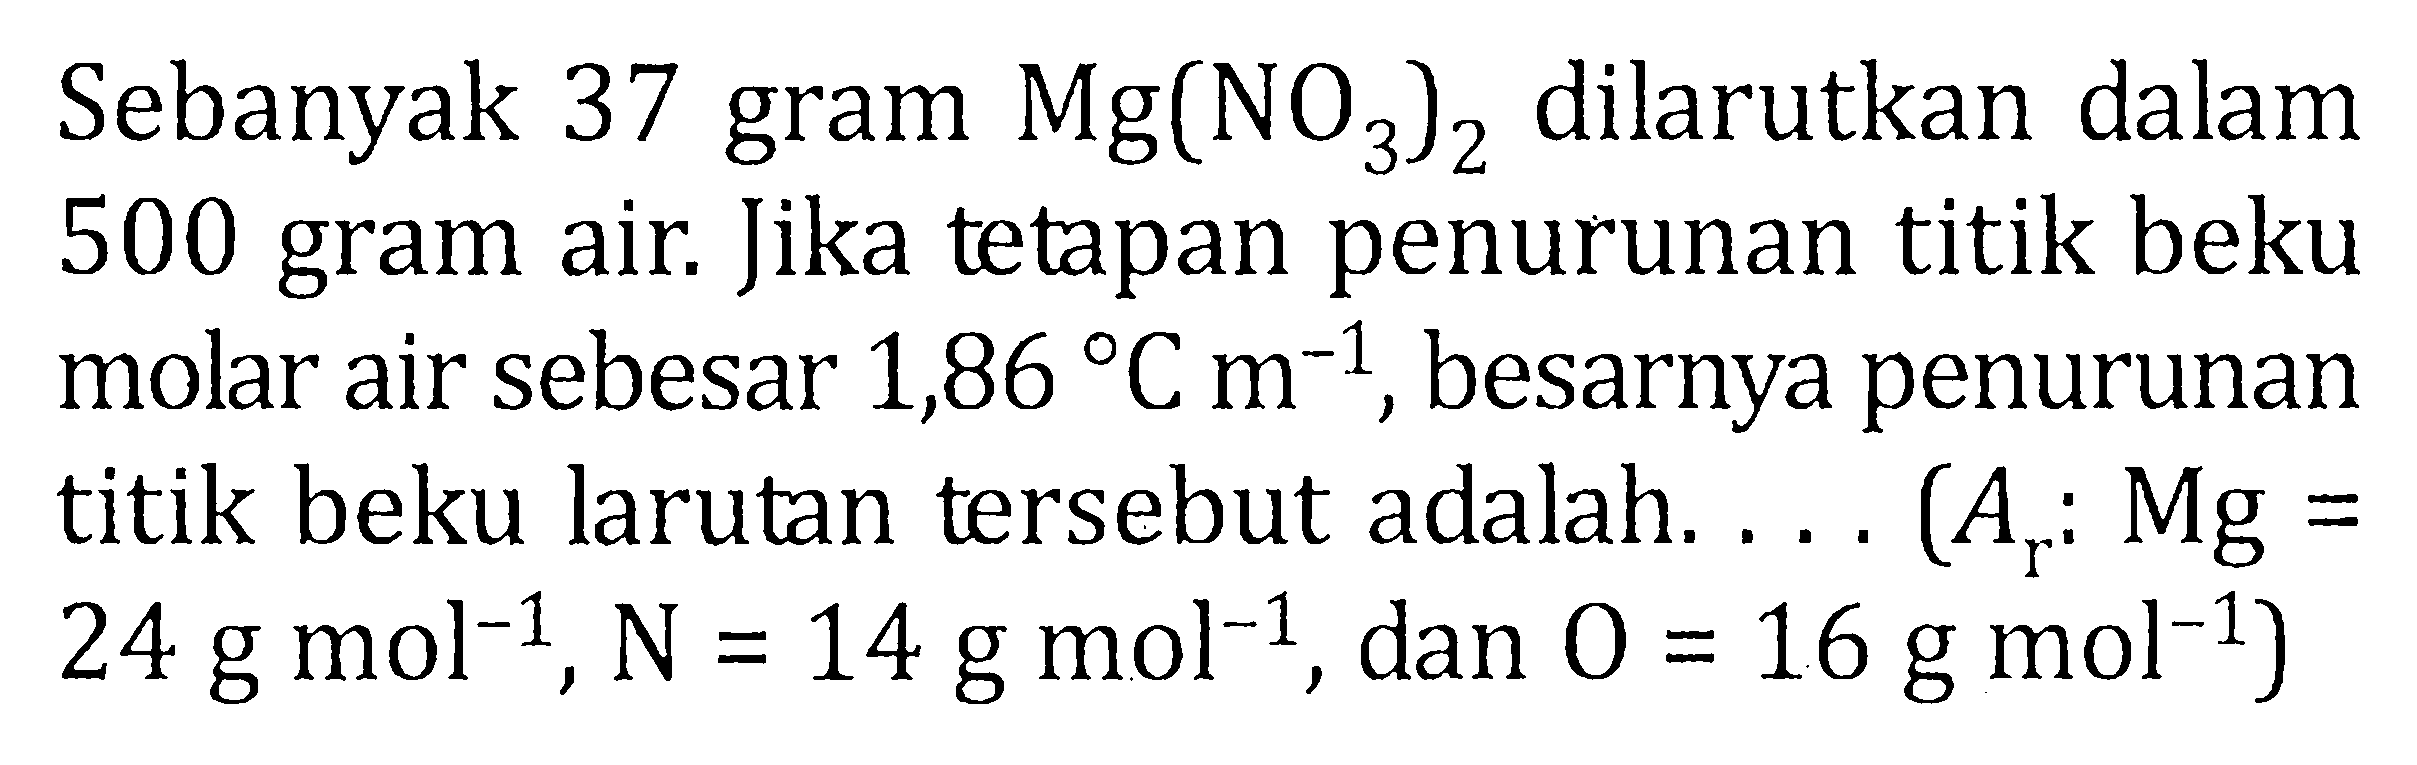 Sebanyak 37 gram Mg(NO3)2 dilarutkan dalam 500 gram air. Jika tetapan penurunan titik beku molar air sebesar 1,86 C m^-1 , besarnya penurunan titik beku larutan tersebut adalah .... (Ar : Mg = 24 g mol^-1, N = 14 g mol^-1, dan O = 16 g mol^-1)